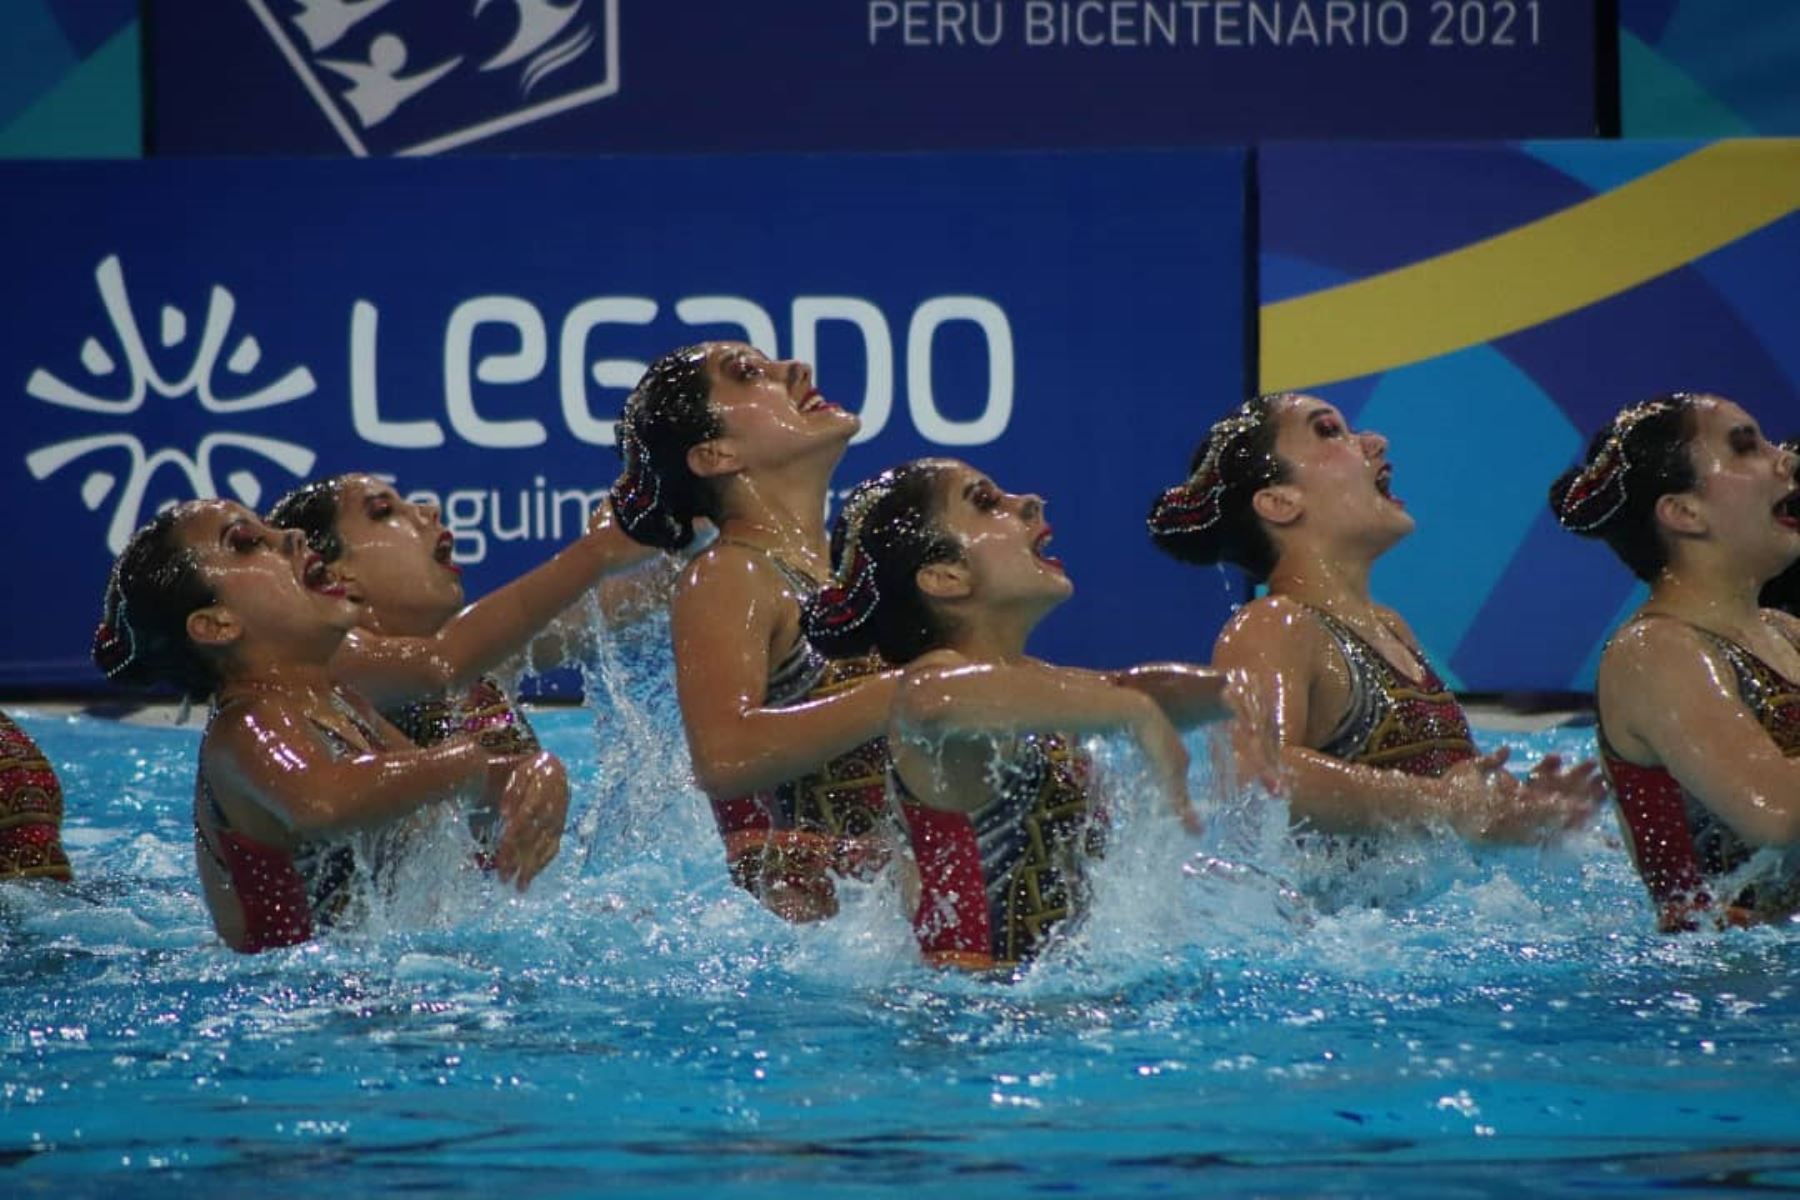 El equipo peruano se apoderó de la medalla de bronce en natación artística en el Campeonato Sudamericano Juvenil de Deportes Acuáticos Perú Bicentenario 2021